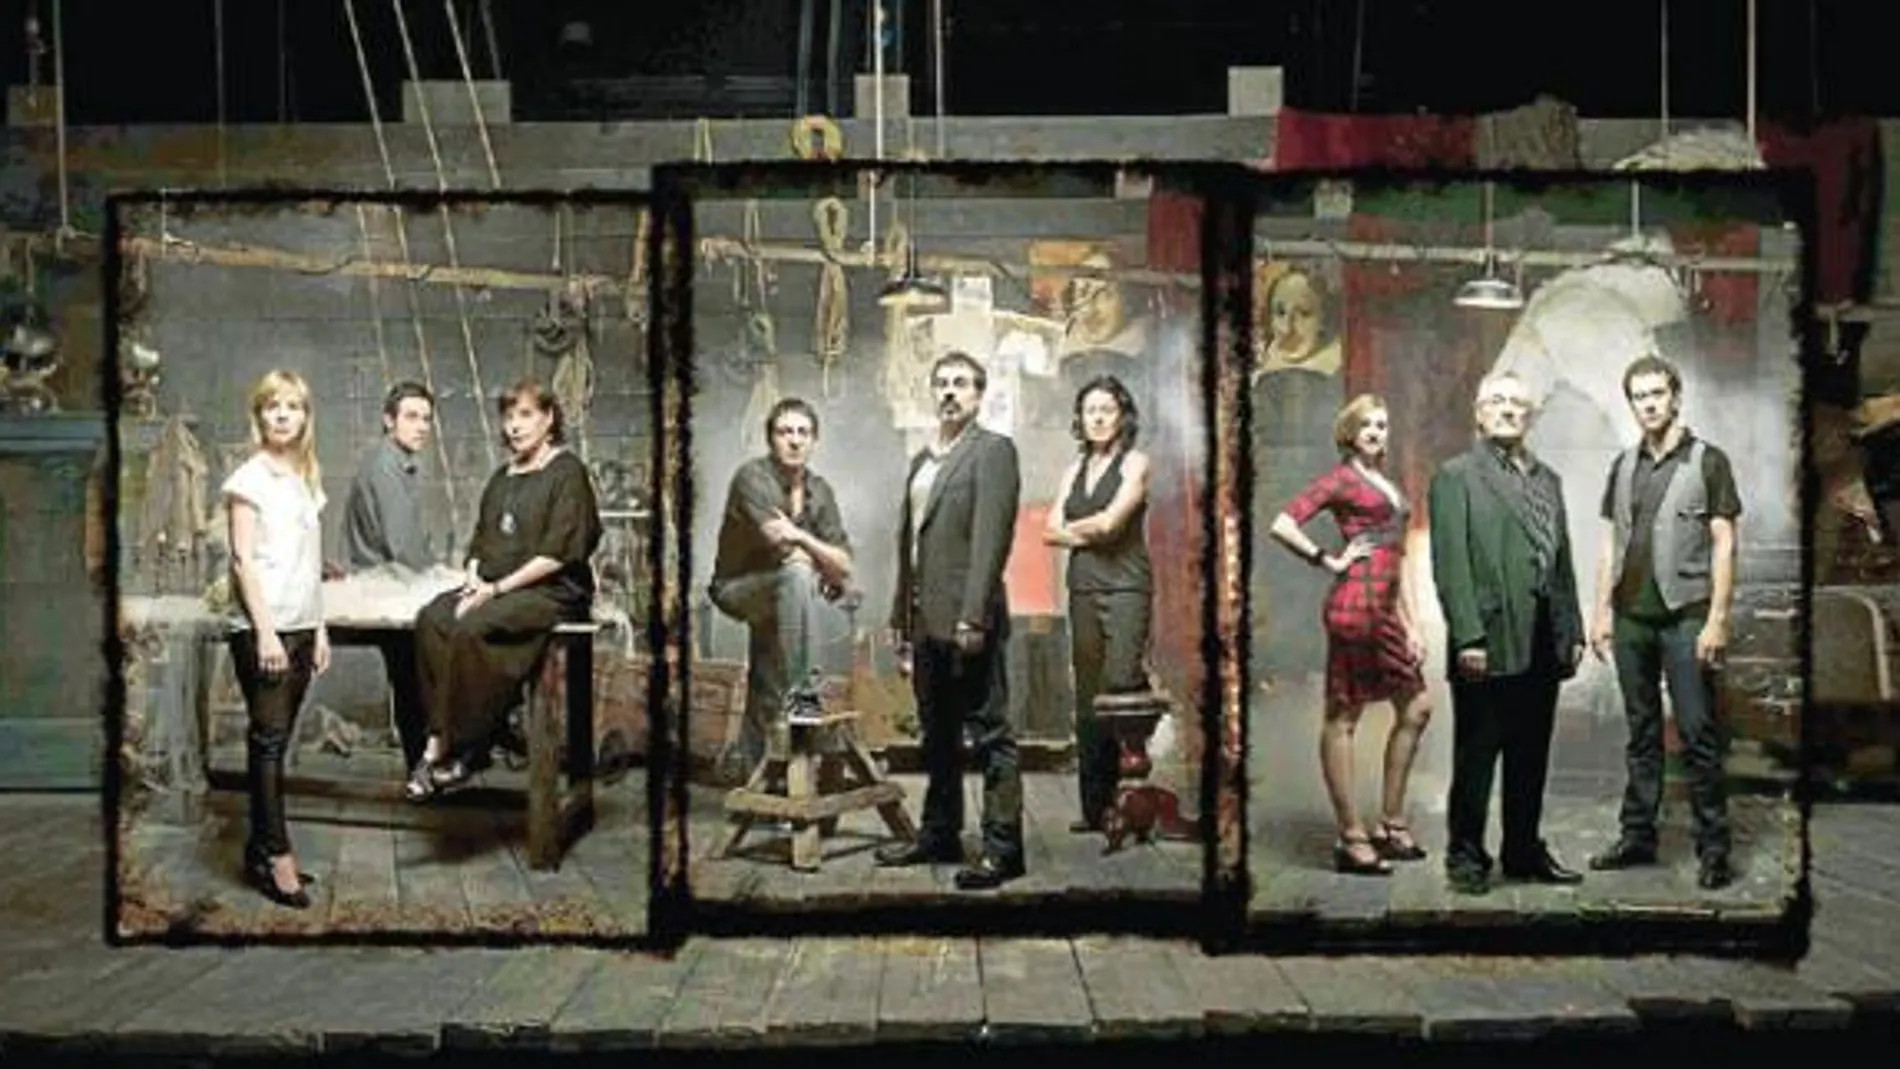 Los actores de la compañía titular del teatro representarán tres obras del T6 en la temporada 2009/10